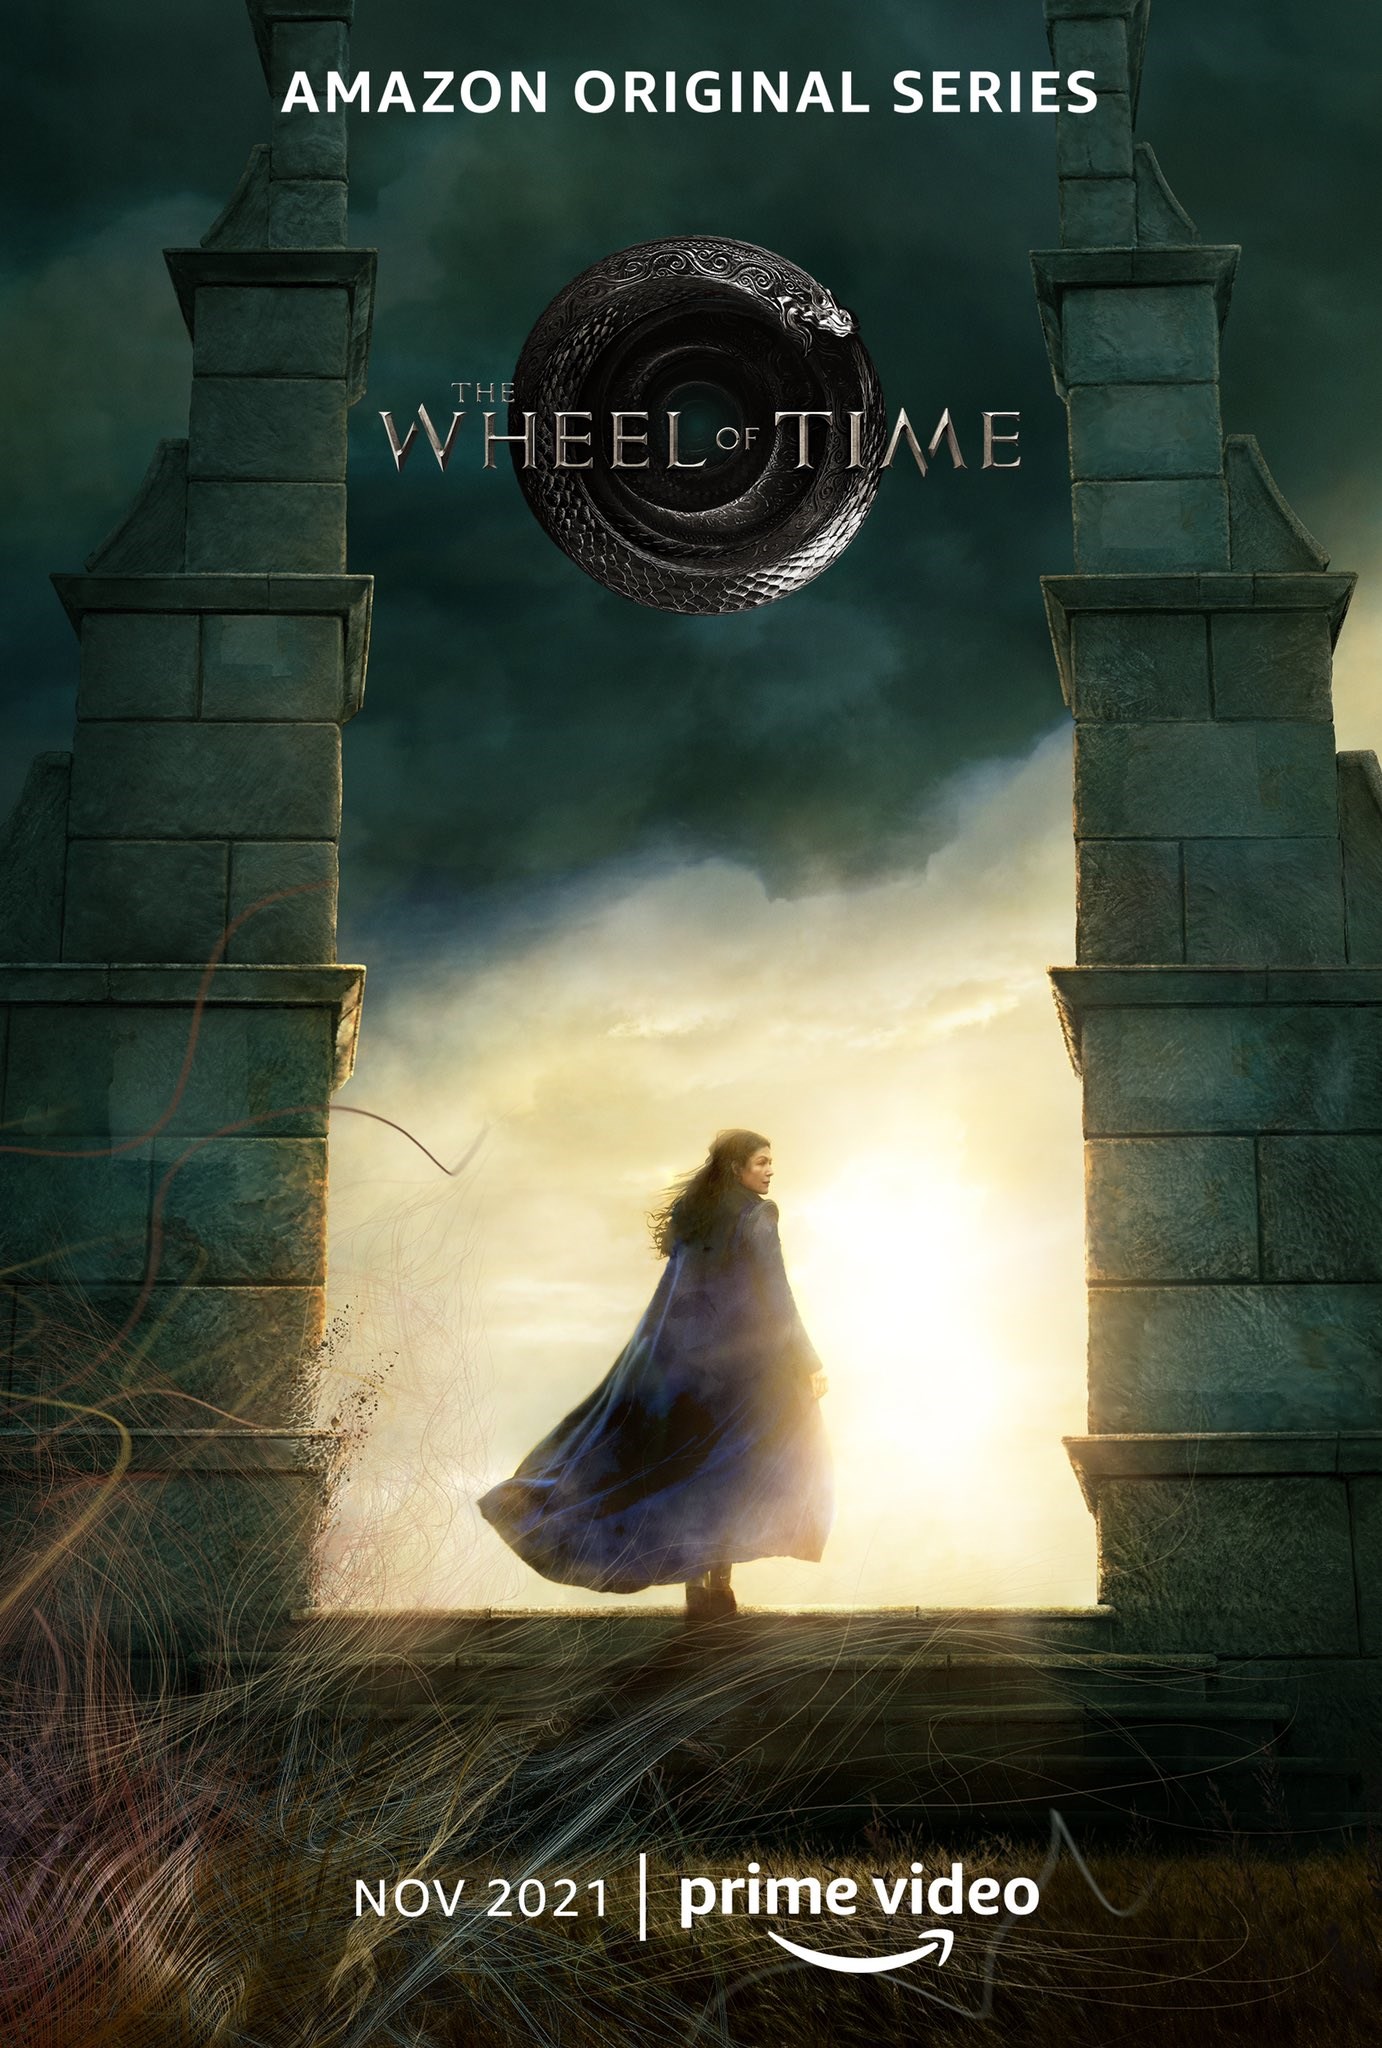 Amazon'un The Wheel of Time dizisinden ilk görseller paylaşıldı